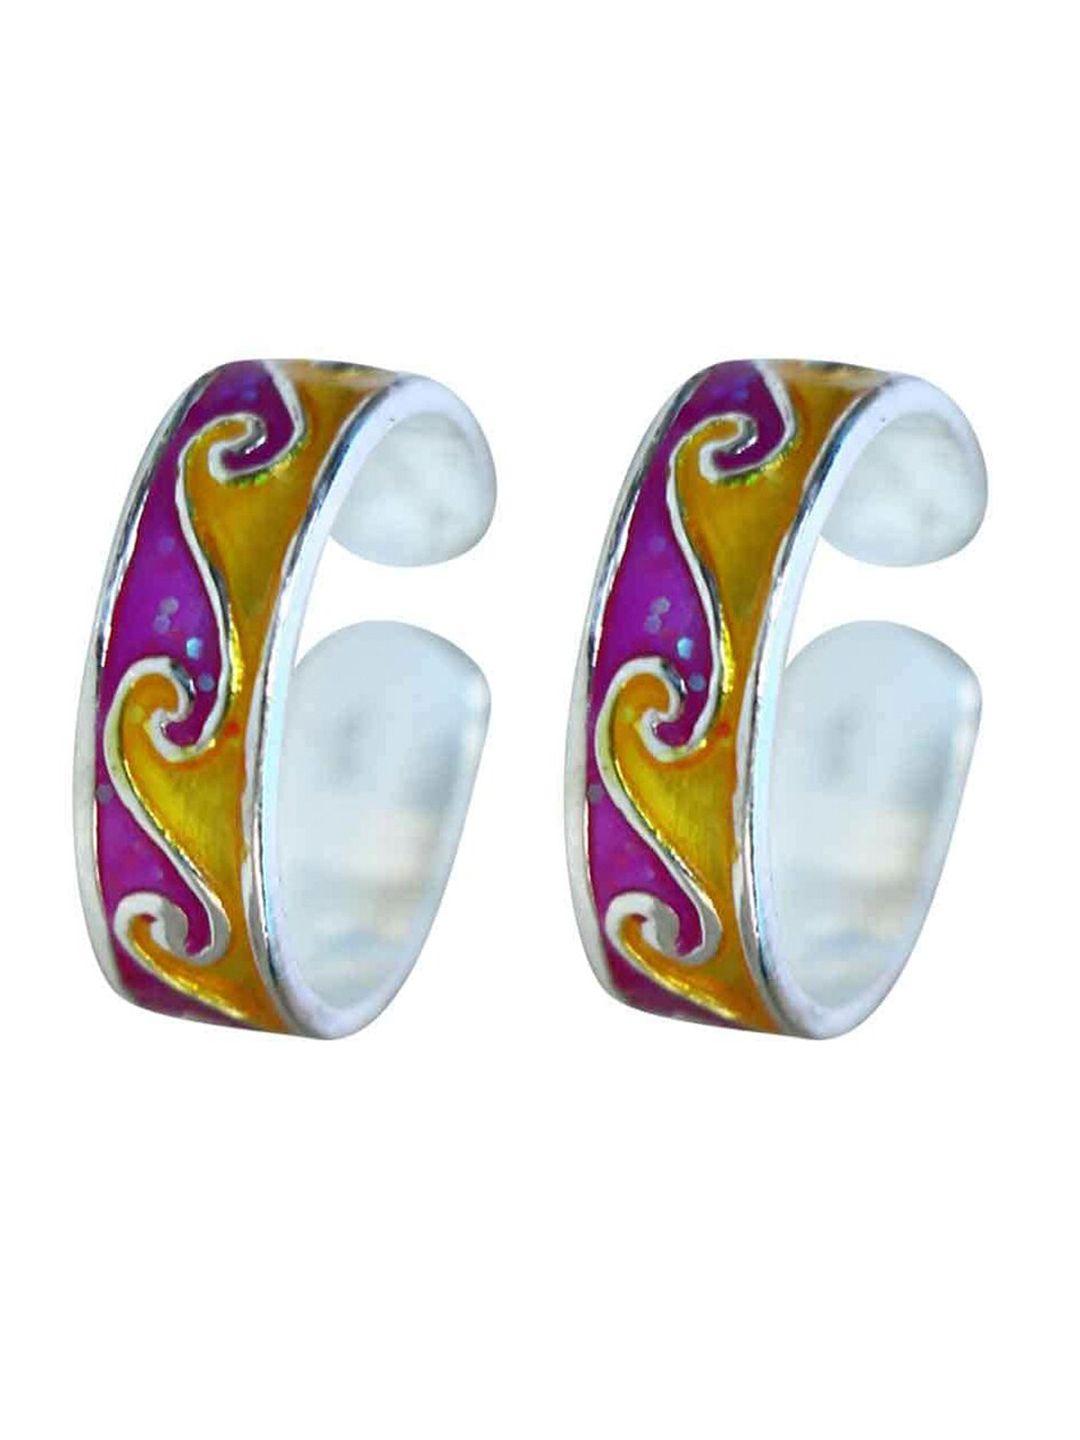 abhooshan set of 2 92.5 sterling silver adjustable toe rings